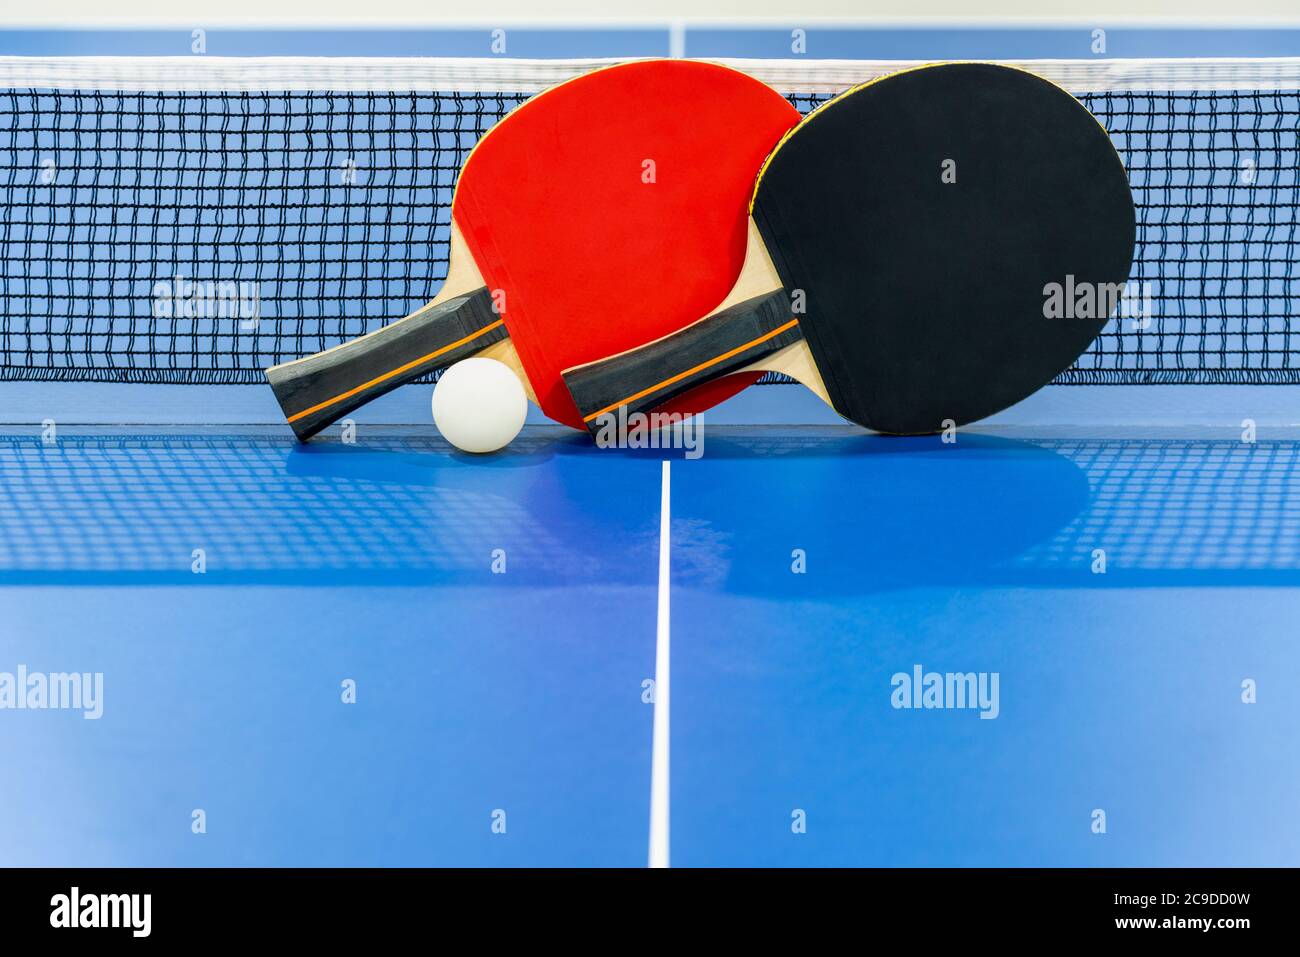 Schwarz und rot Tischtennisschläger und eine weiße Kugel auf der blauen Tischtennisplatte mit einem Netz, zwei Tischtennispaddel ist ein Sportwettkampfgerät i Stockfoto